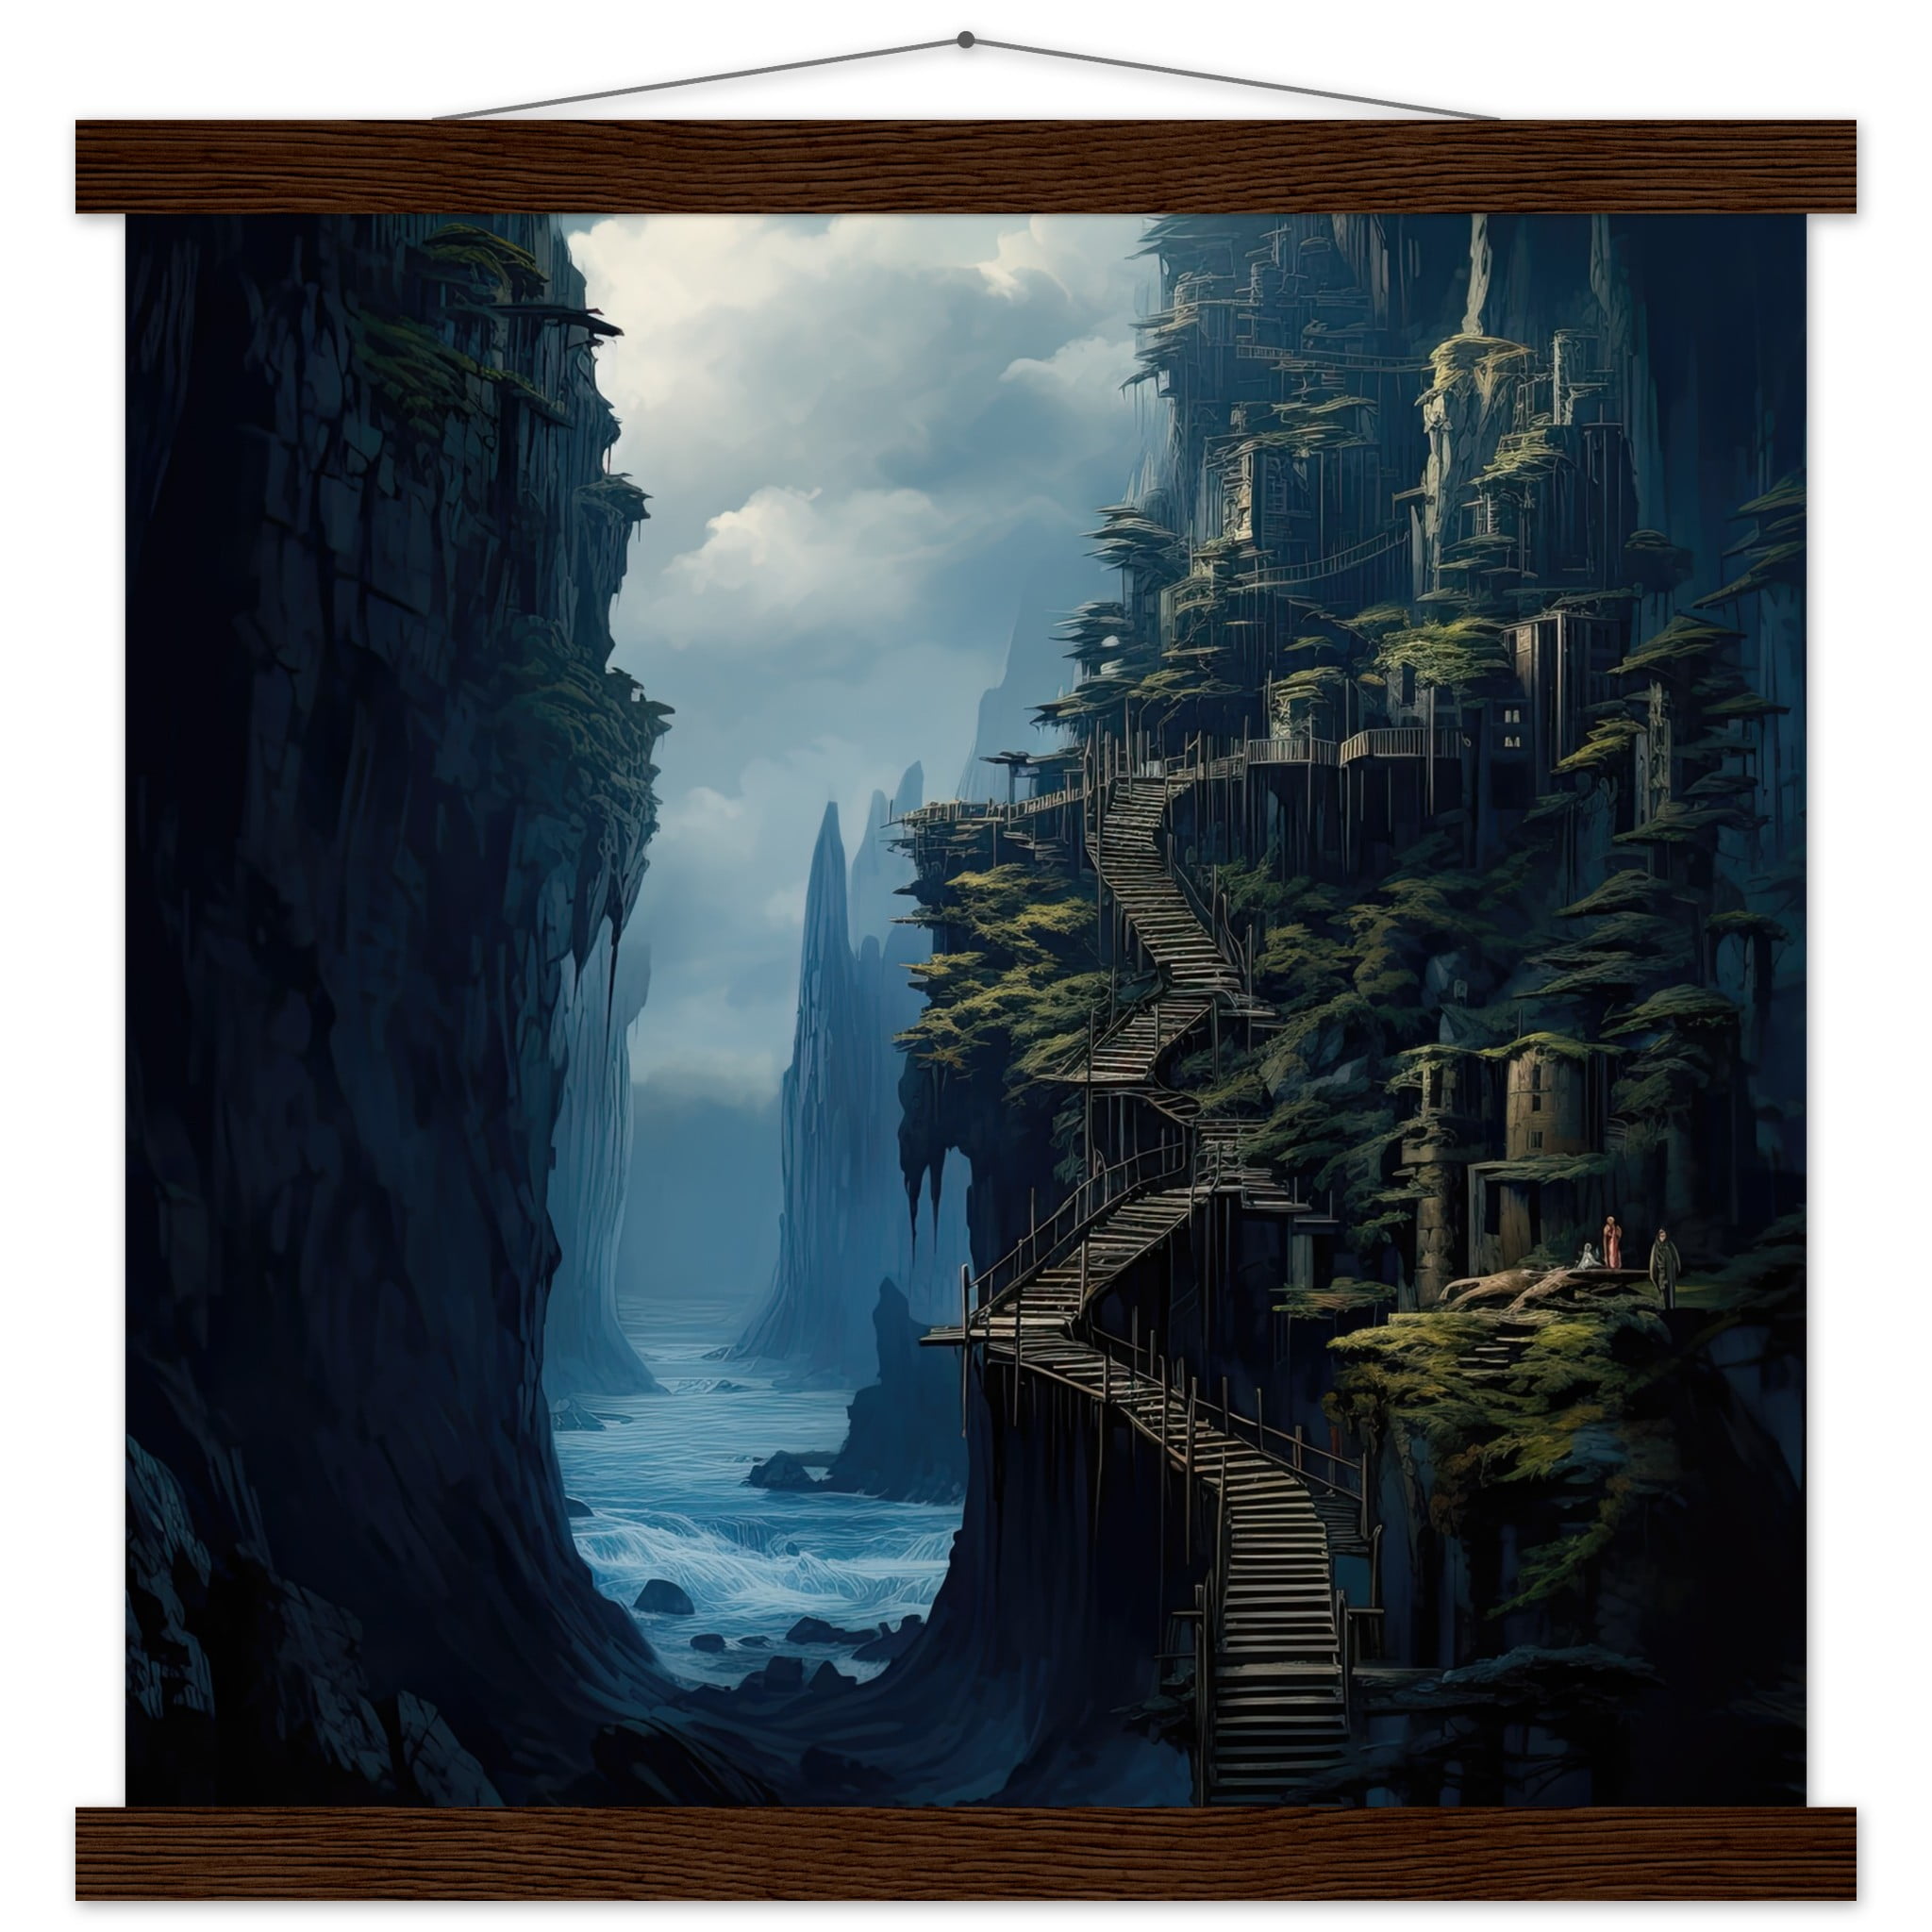 Cliffside Kingdom Landscape Art Print with Hanger – 40×40 cm / 16×16″, Dark wood wall hanger